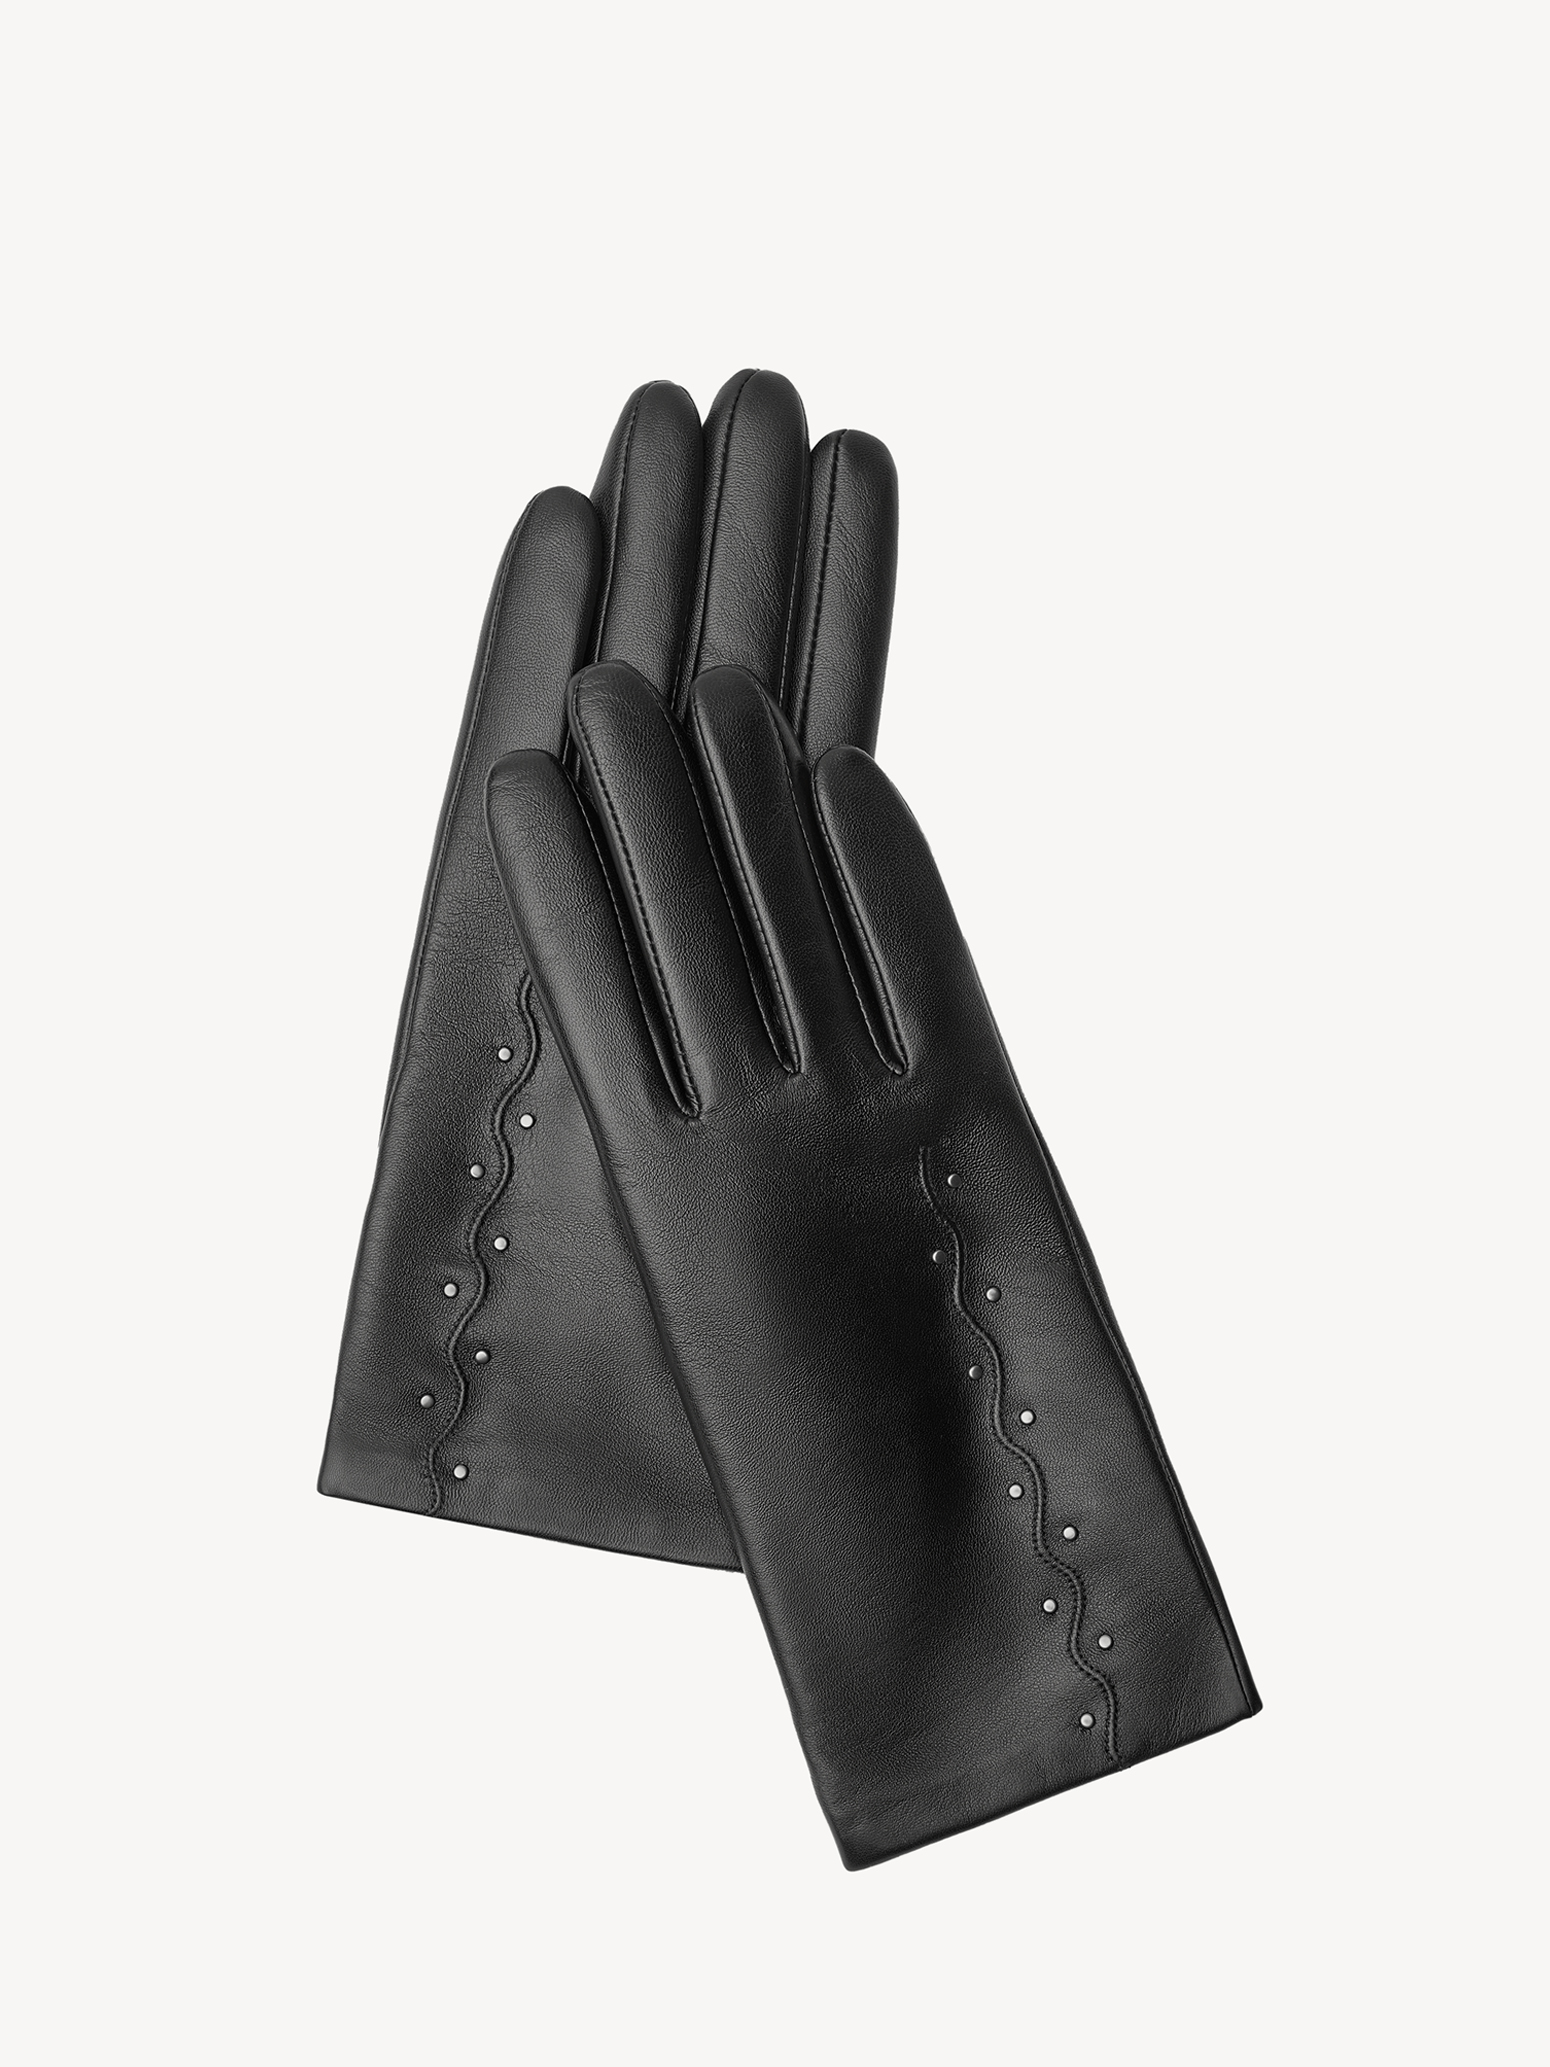 Перчатки женские Tamaris TM-0304-001 черный, р. 7